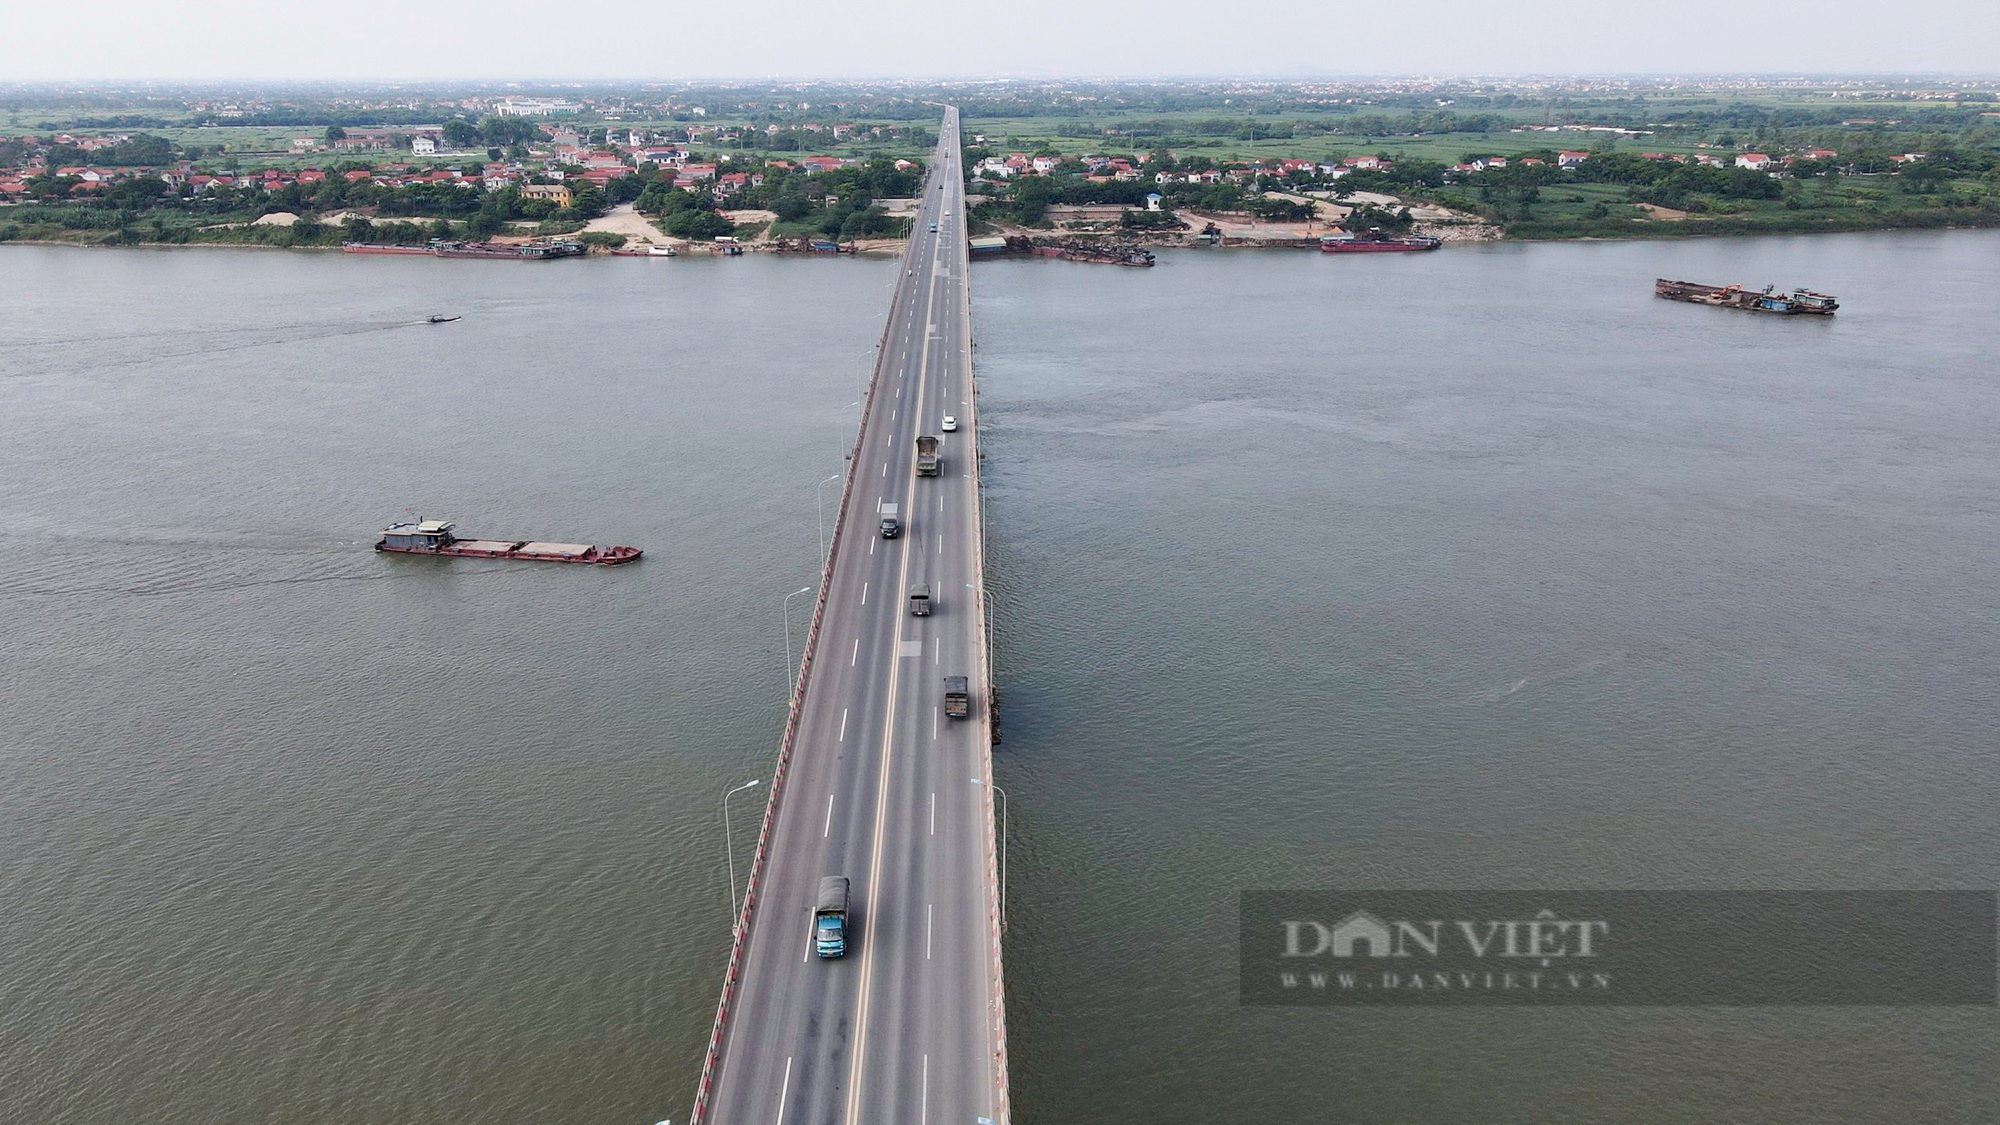 Cận cảnh cây cầu vượt sông dài nhất Việt Nam sau 9 năm vận hành khai thác - Ảnh 6.